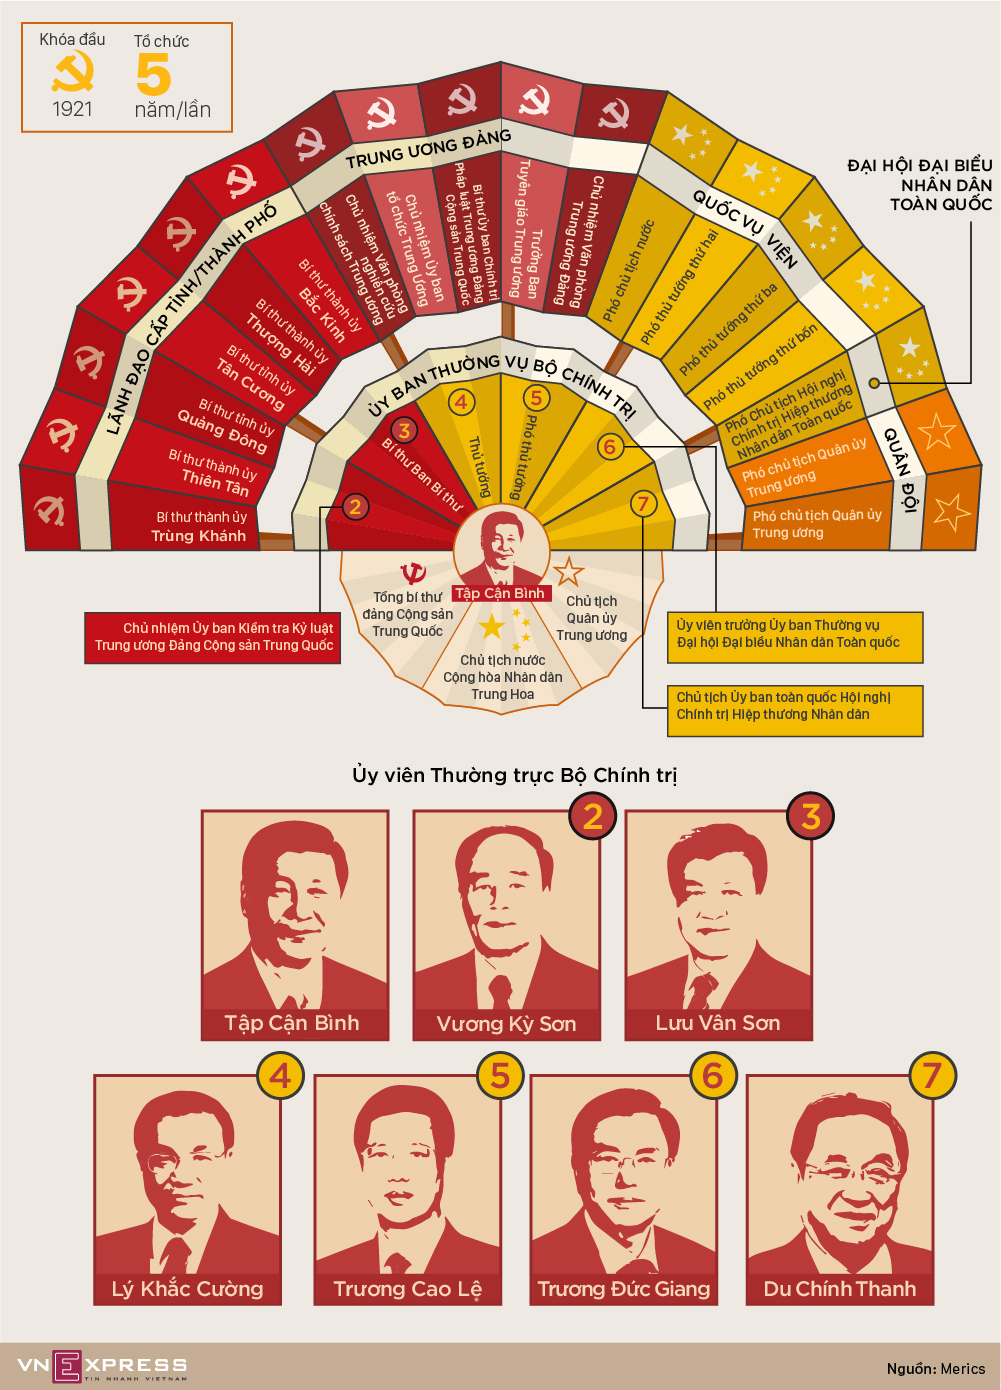 Cơ cấu quyền lực của Bộ Chính trị đảng Cộng sản Trung Quốc